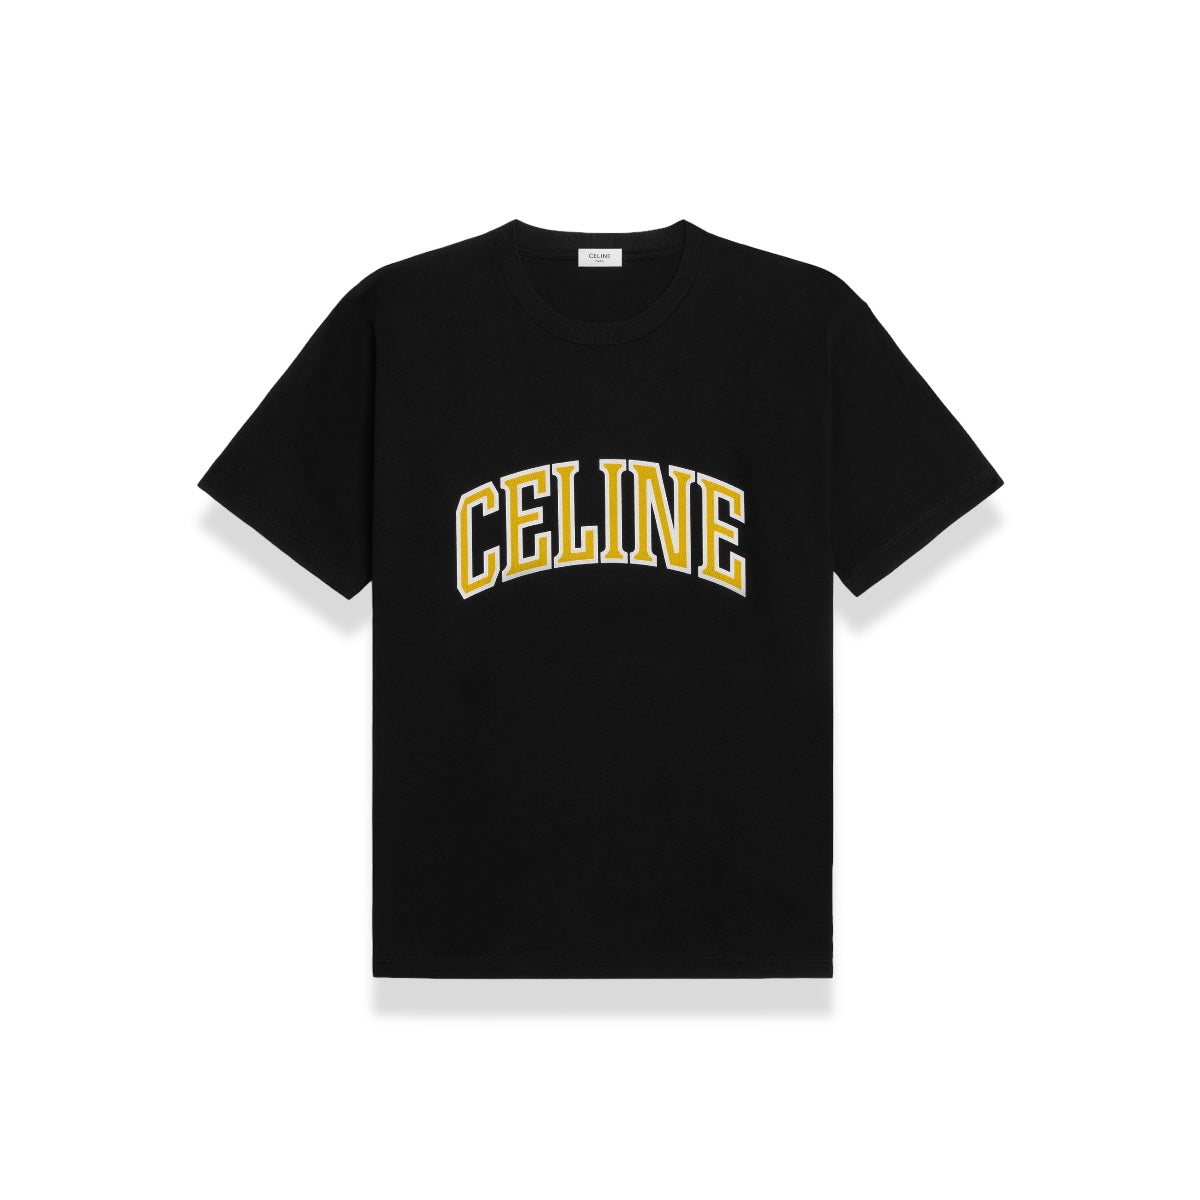 Celine - University logo T-shirt black